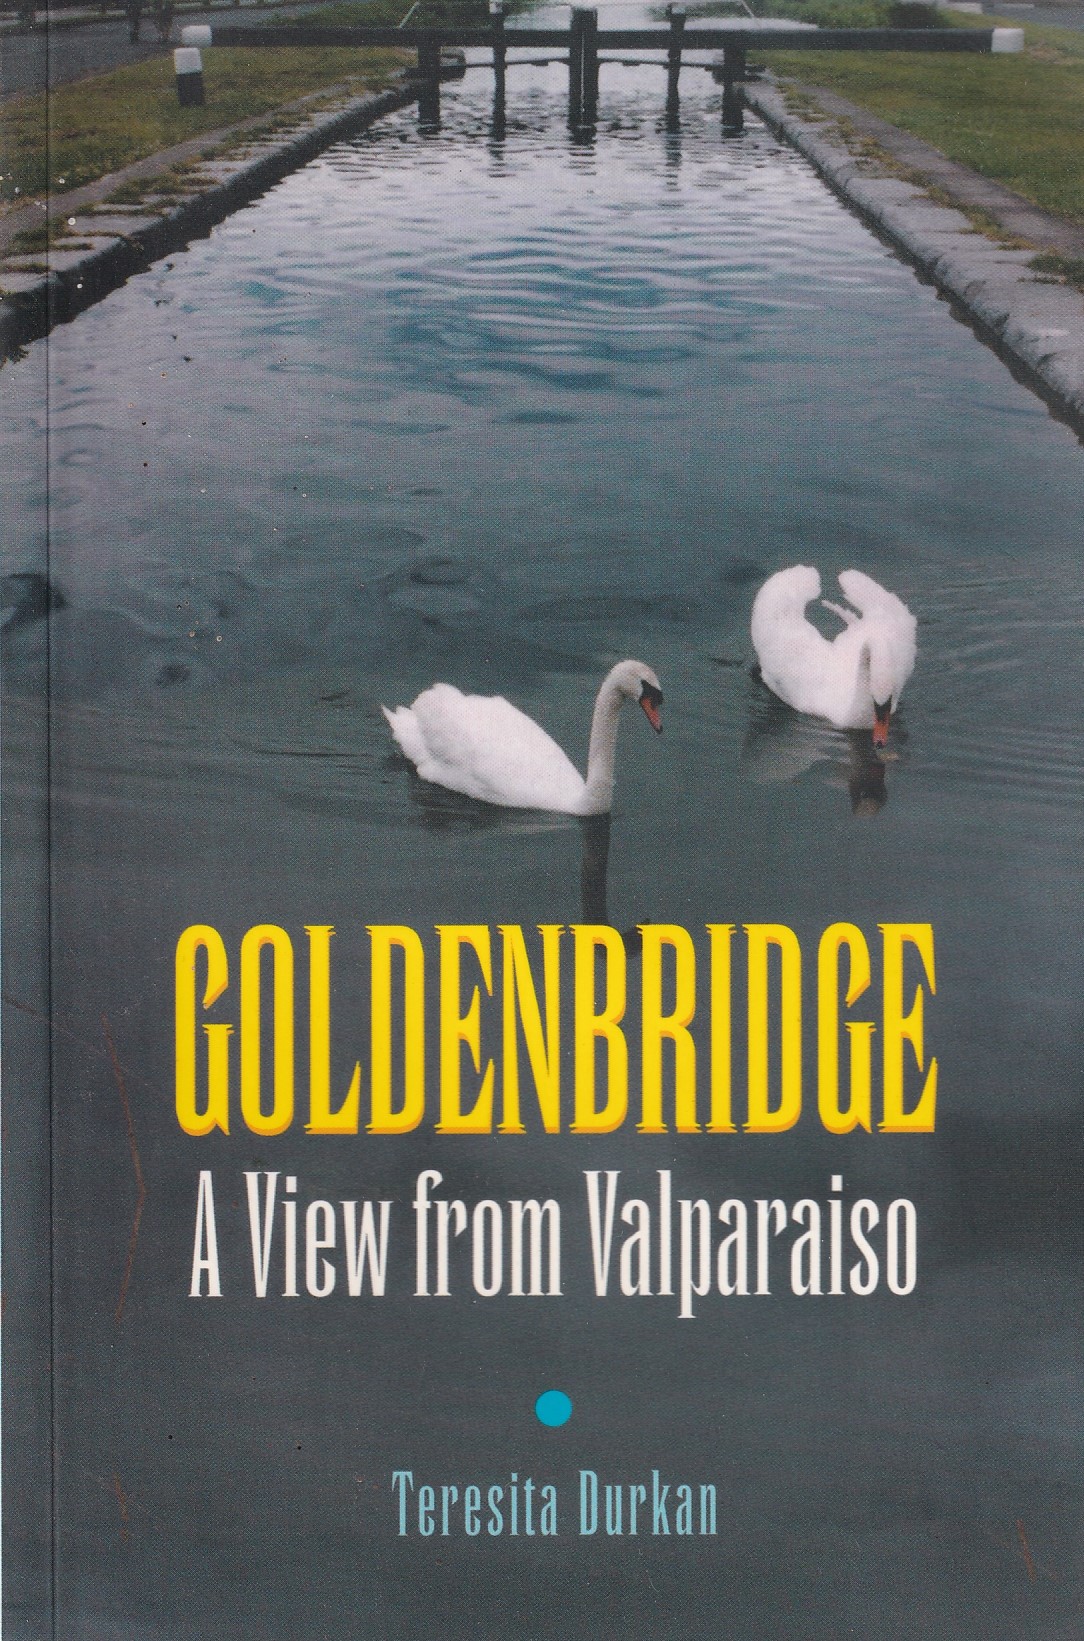 Goldenbridge: A View from Valparaiso | Teresita Durkan | Charlie Byrne's